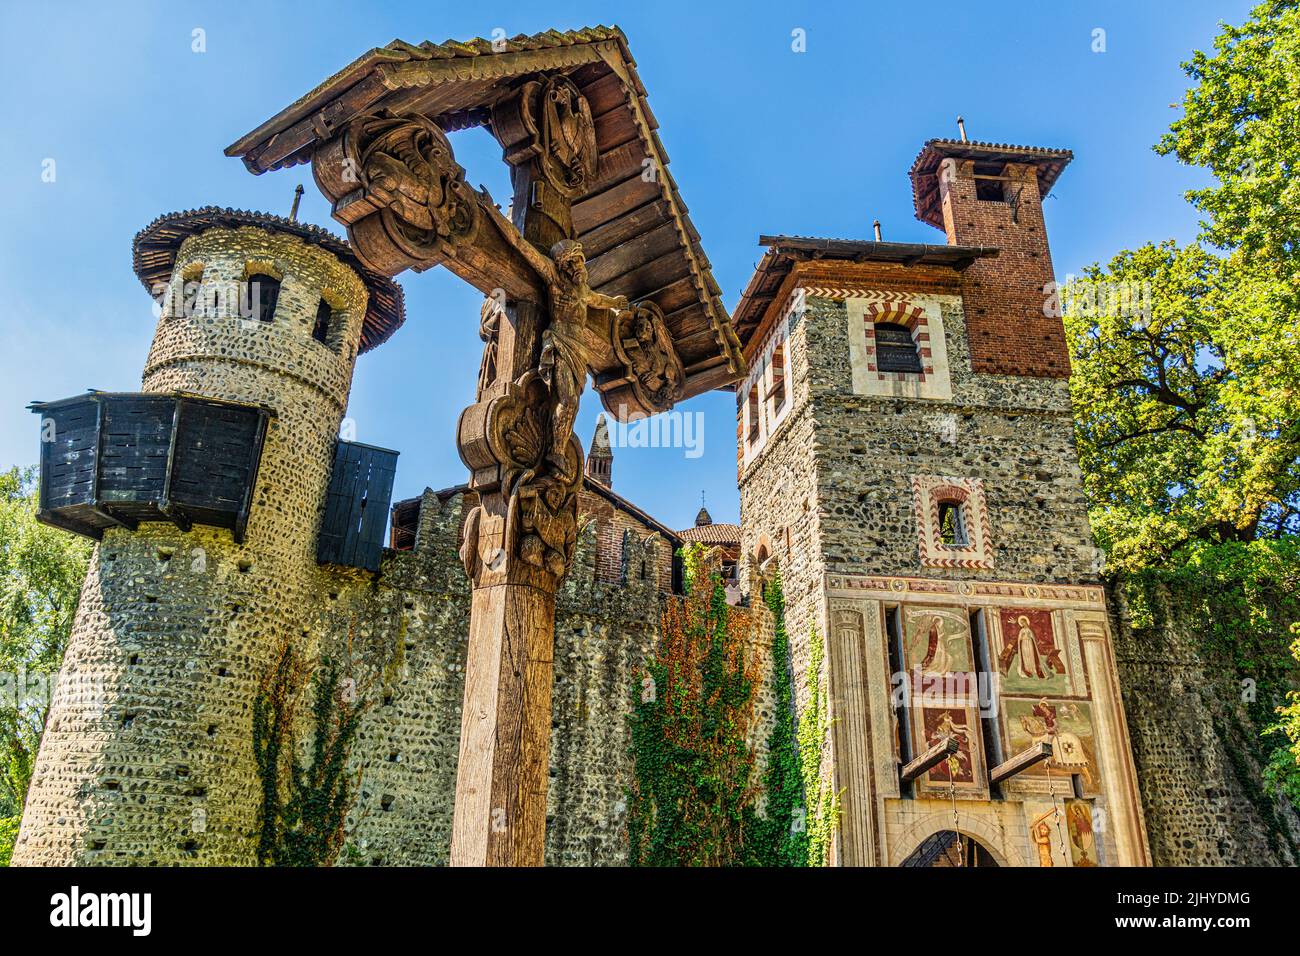 Ingresso del borgo medievale nel Parco del Valentino, con crocifisso in legno. Torino, provincia di Torino, Piemonte, Italia, Europa Foto Stock